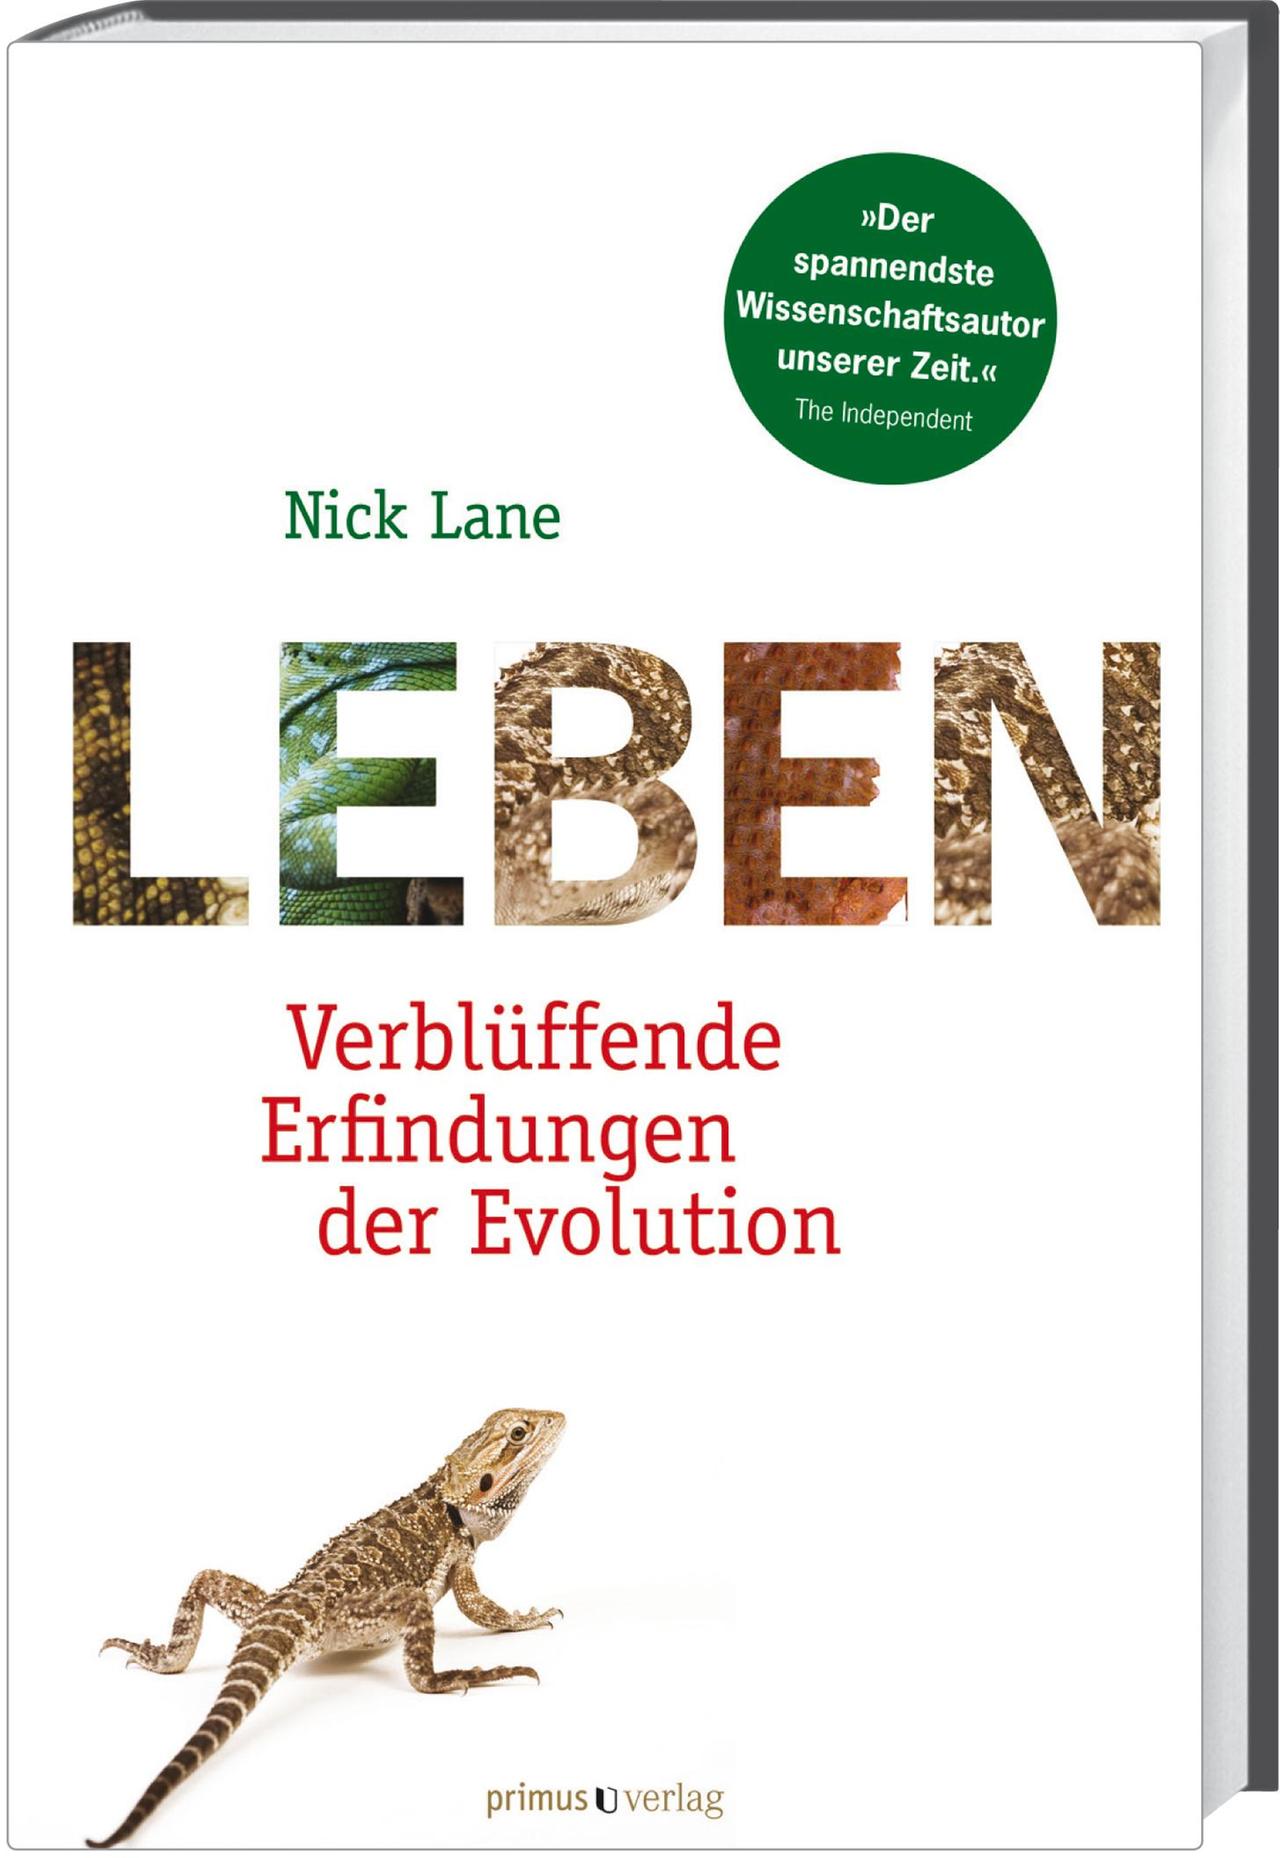 Leben - Verblüffende Erfindungen der Evolution Autor: Nick Lane, übersetzt von Ilona Hauser Primus Verlag, 2013, 368 Seiten, 29,90 Euro ISBN 978-3-86312-361-1